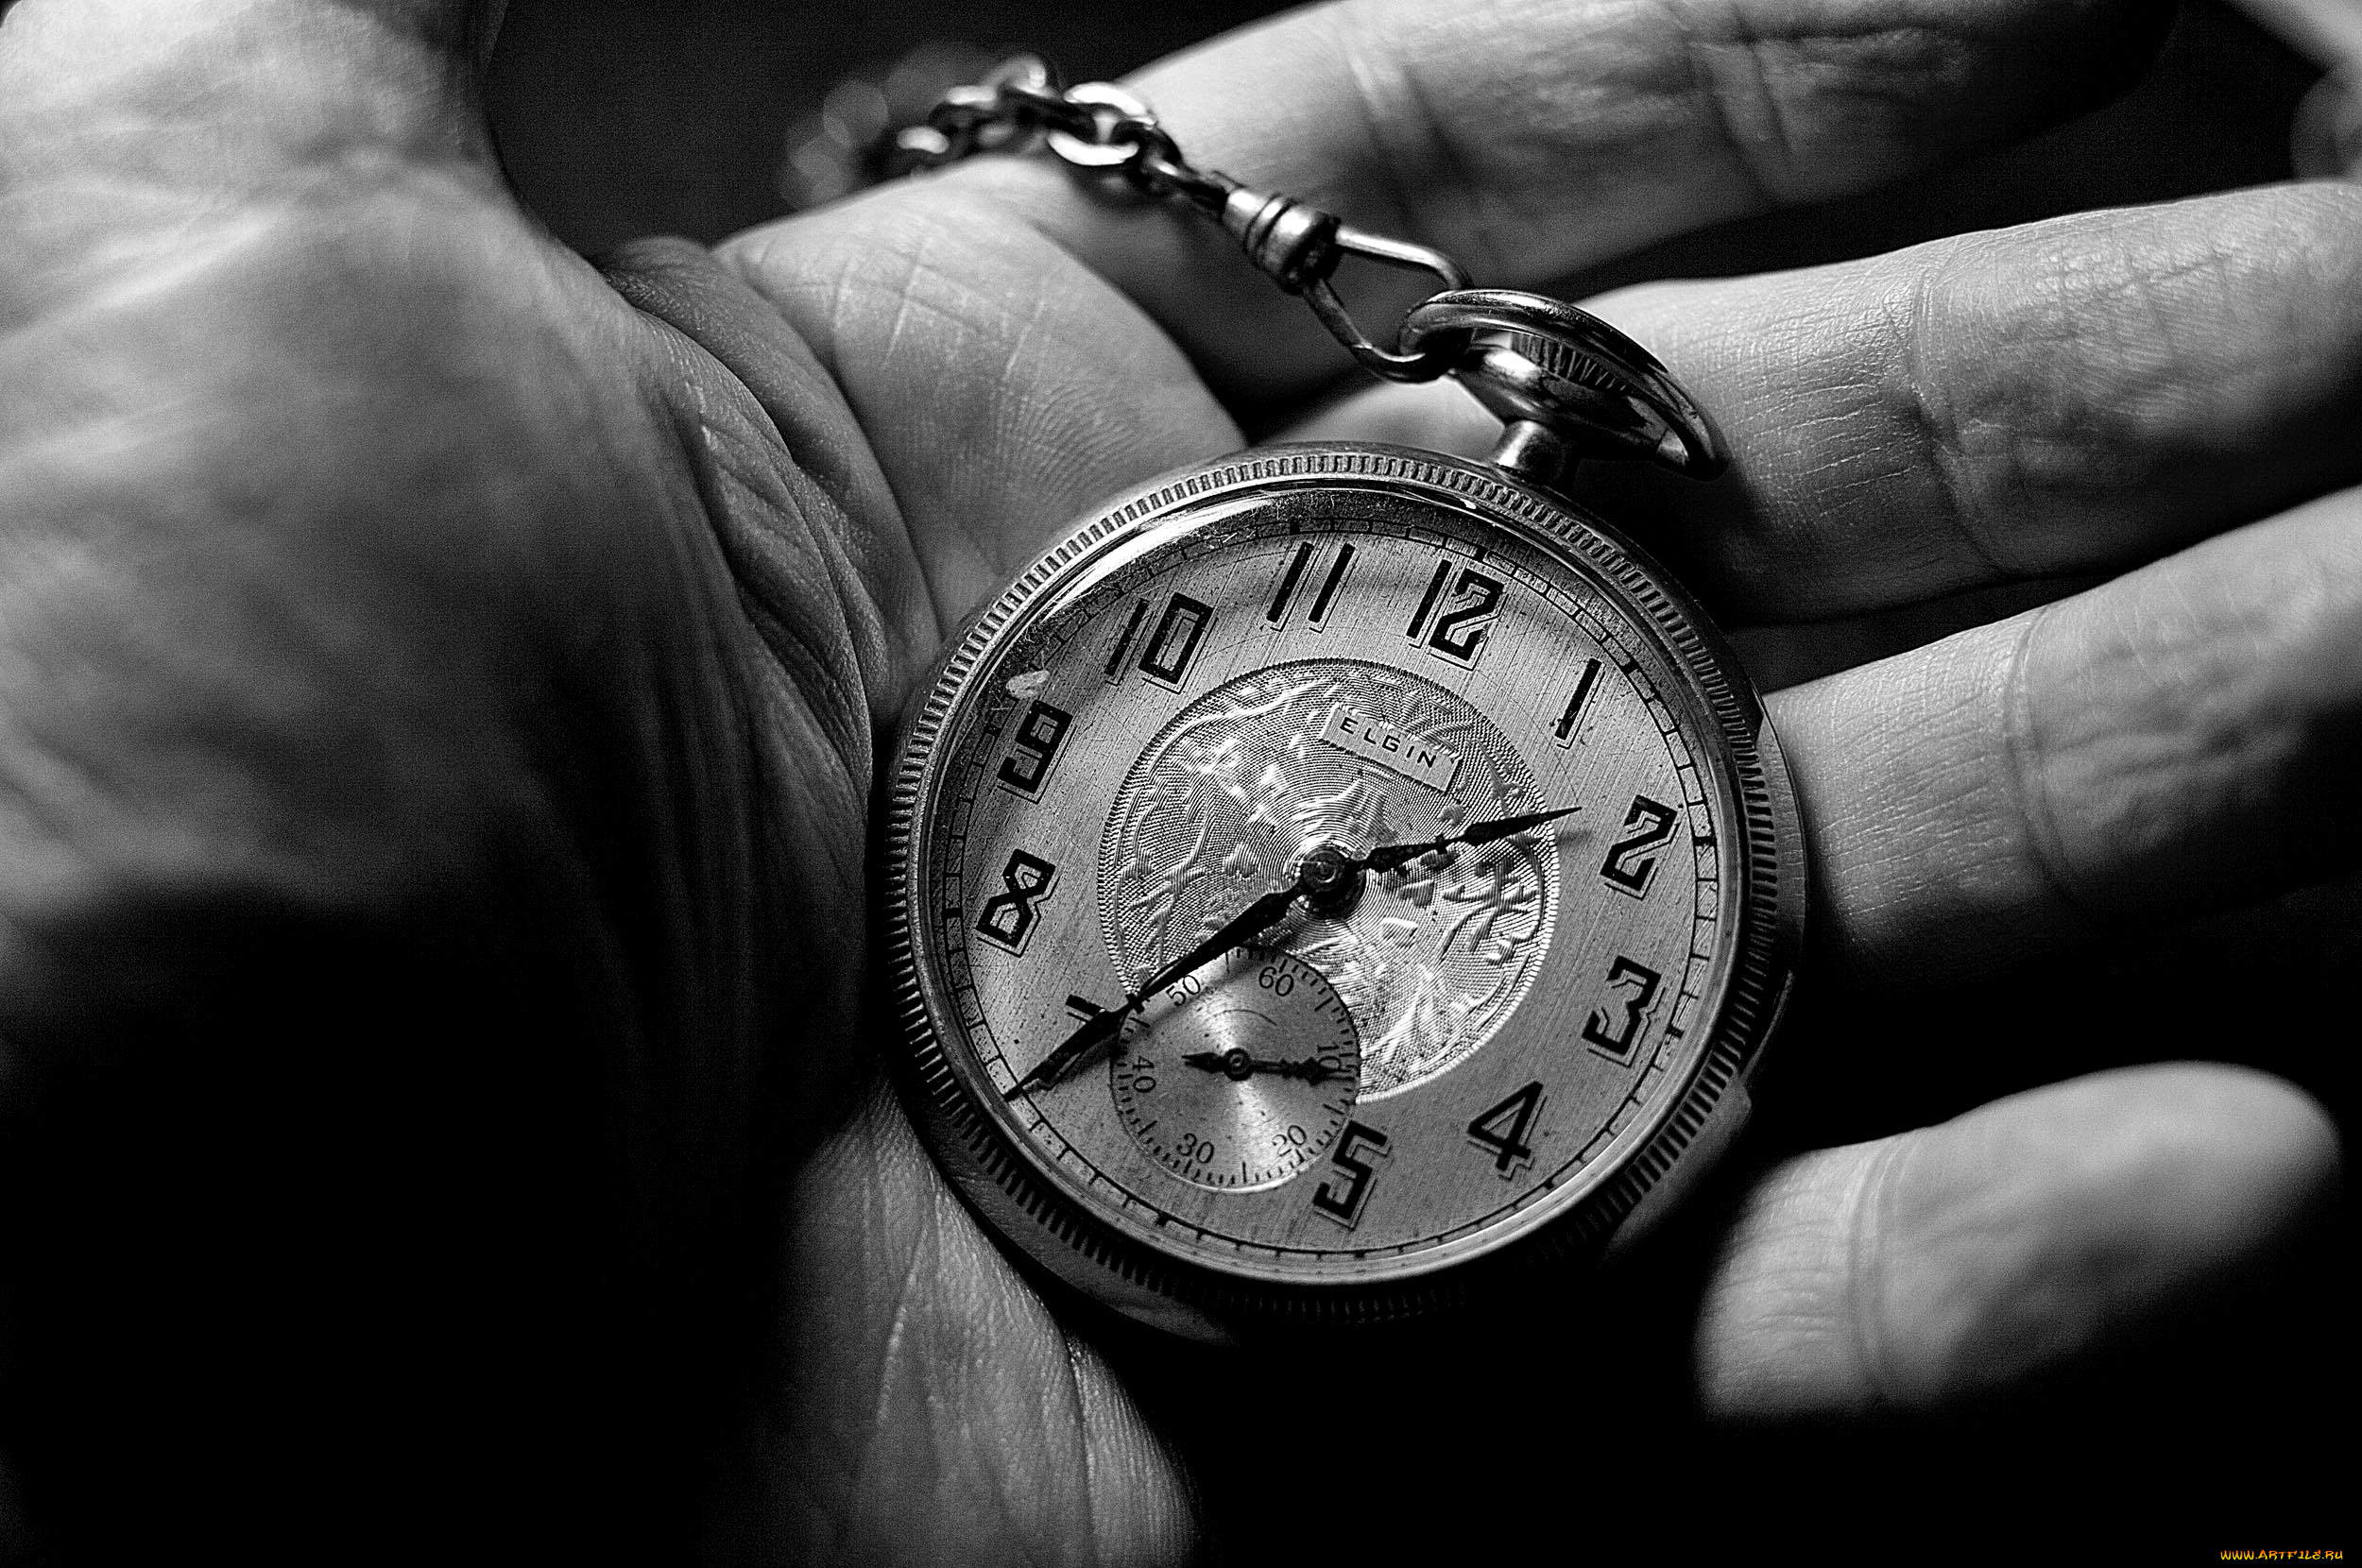 Человек не знает своего времени. Карманные часы в руке. Старые часы на руку. Красивые высказывания о времени. Часы на цепочке.